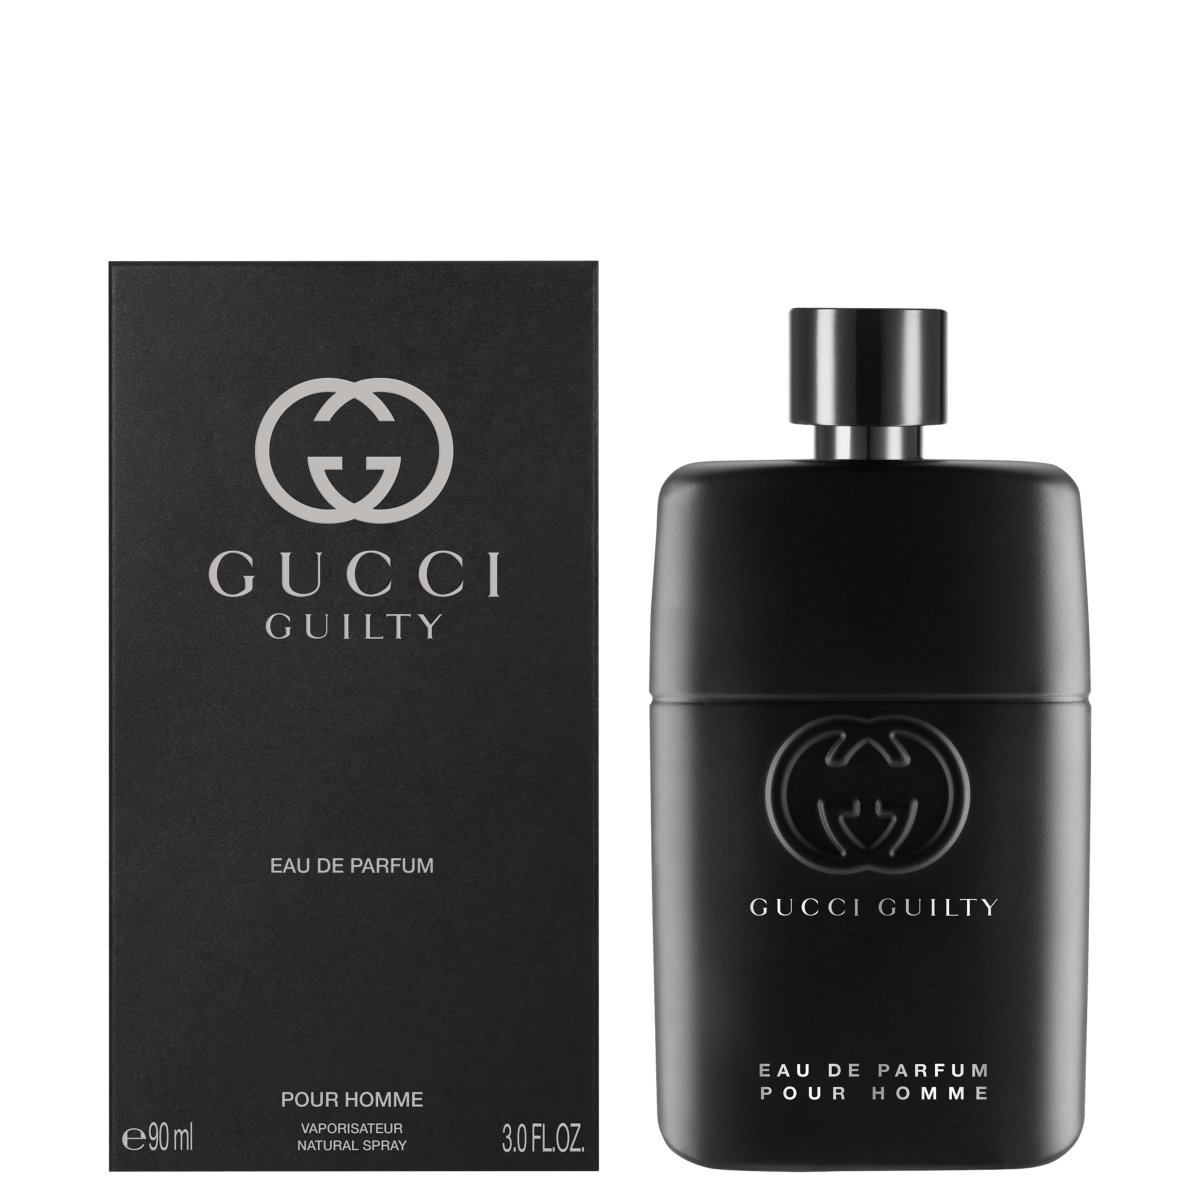 Guilty Pour Homme Eau de Parfum Gucci Cologne - ein neues Parfum für